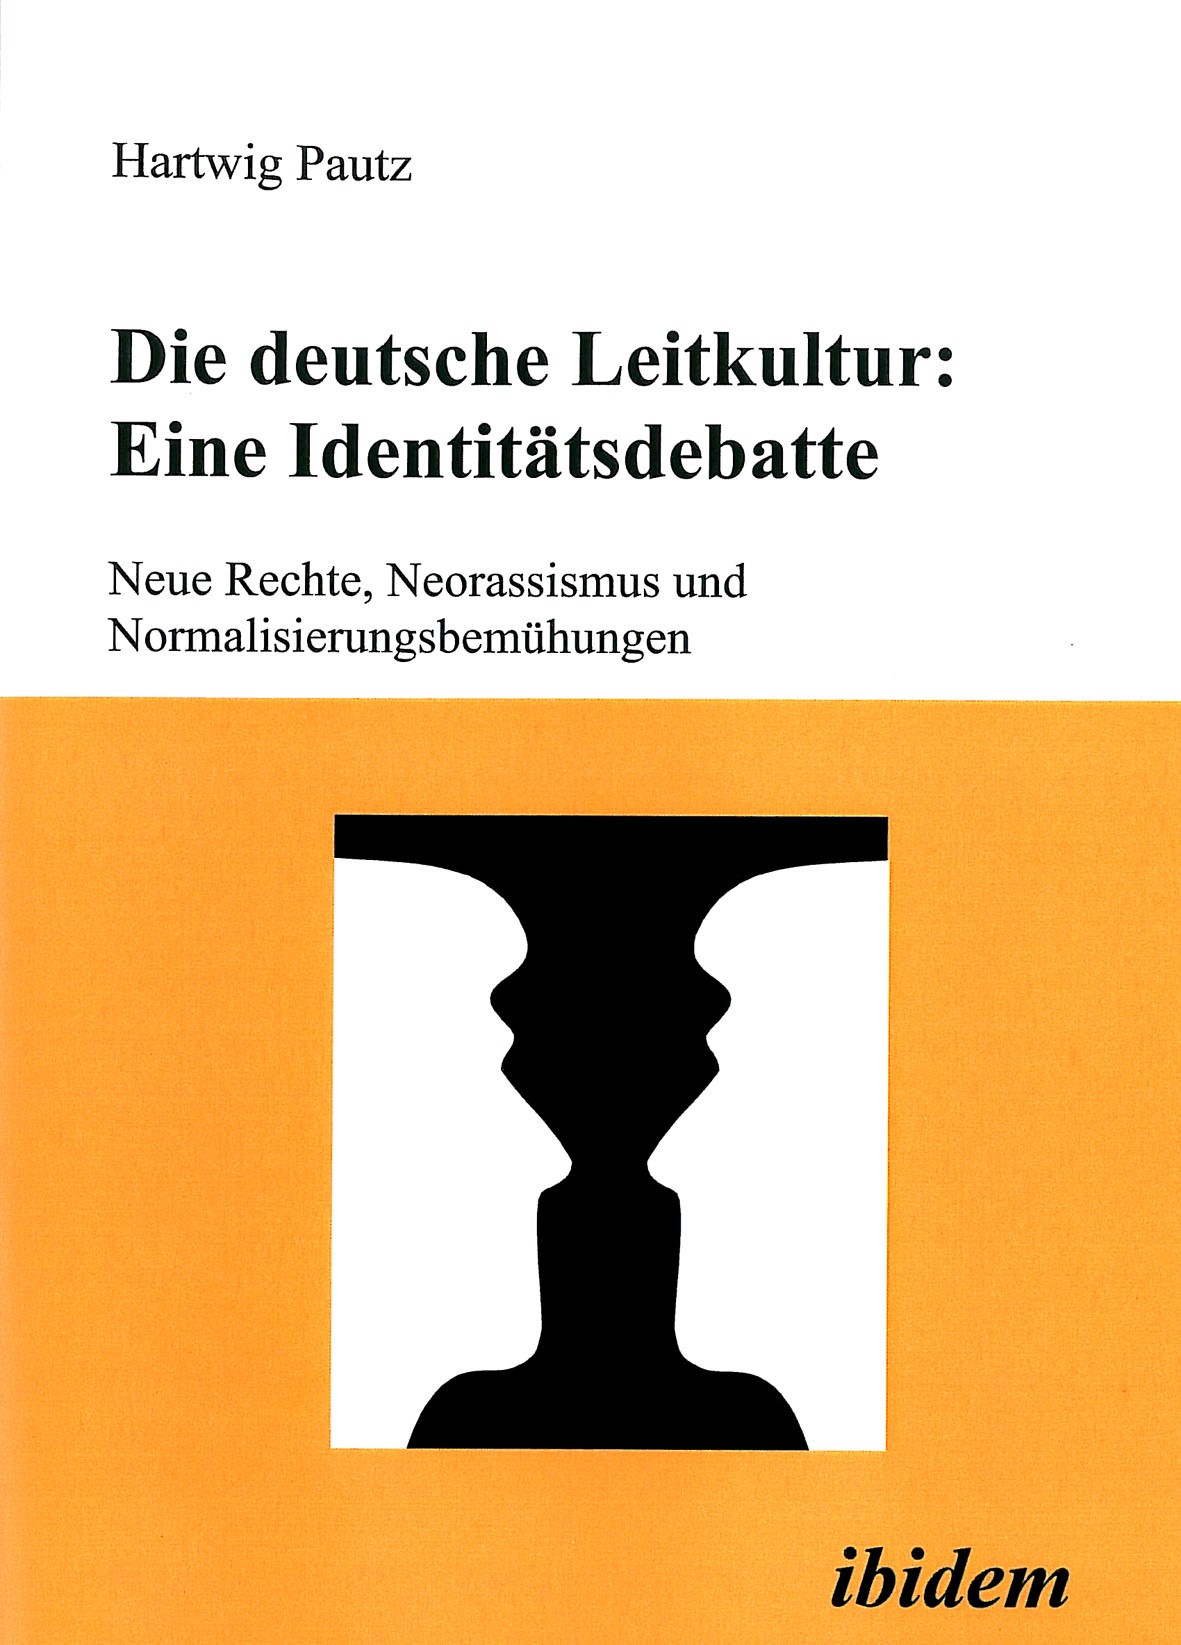 Die deutsche Leitkultur: Eine Identitätsdebatte